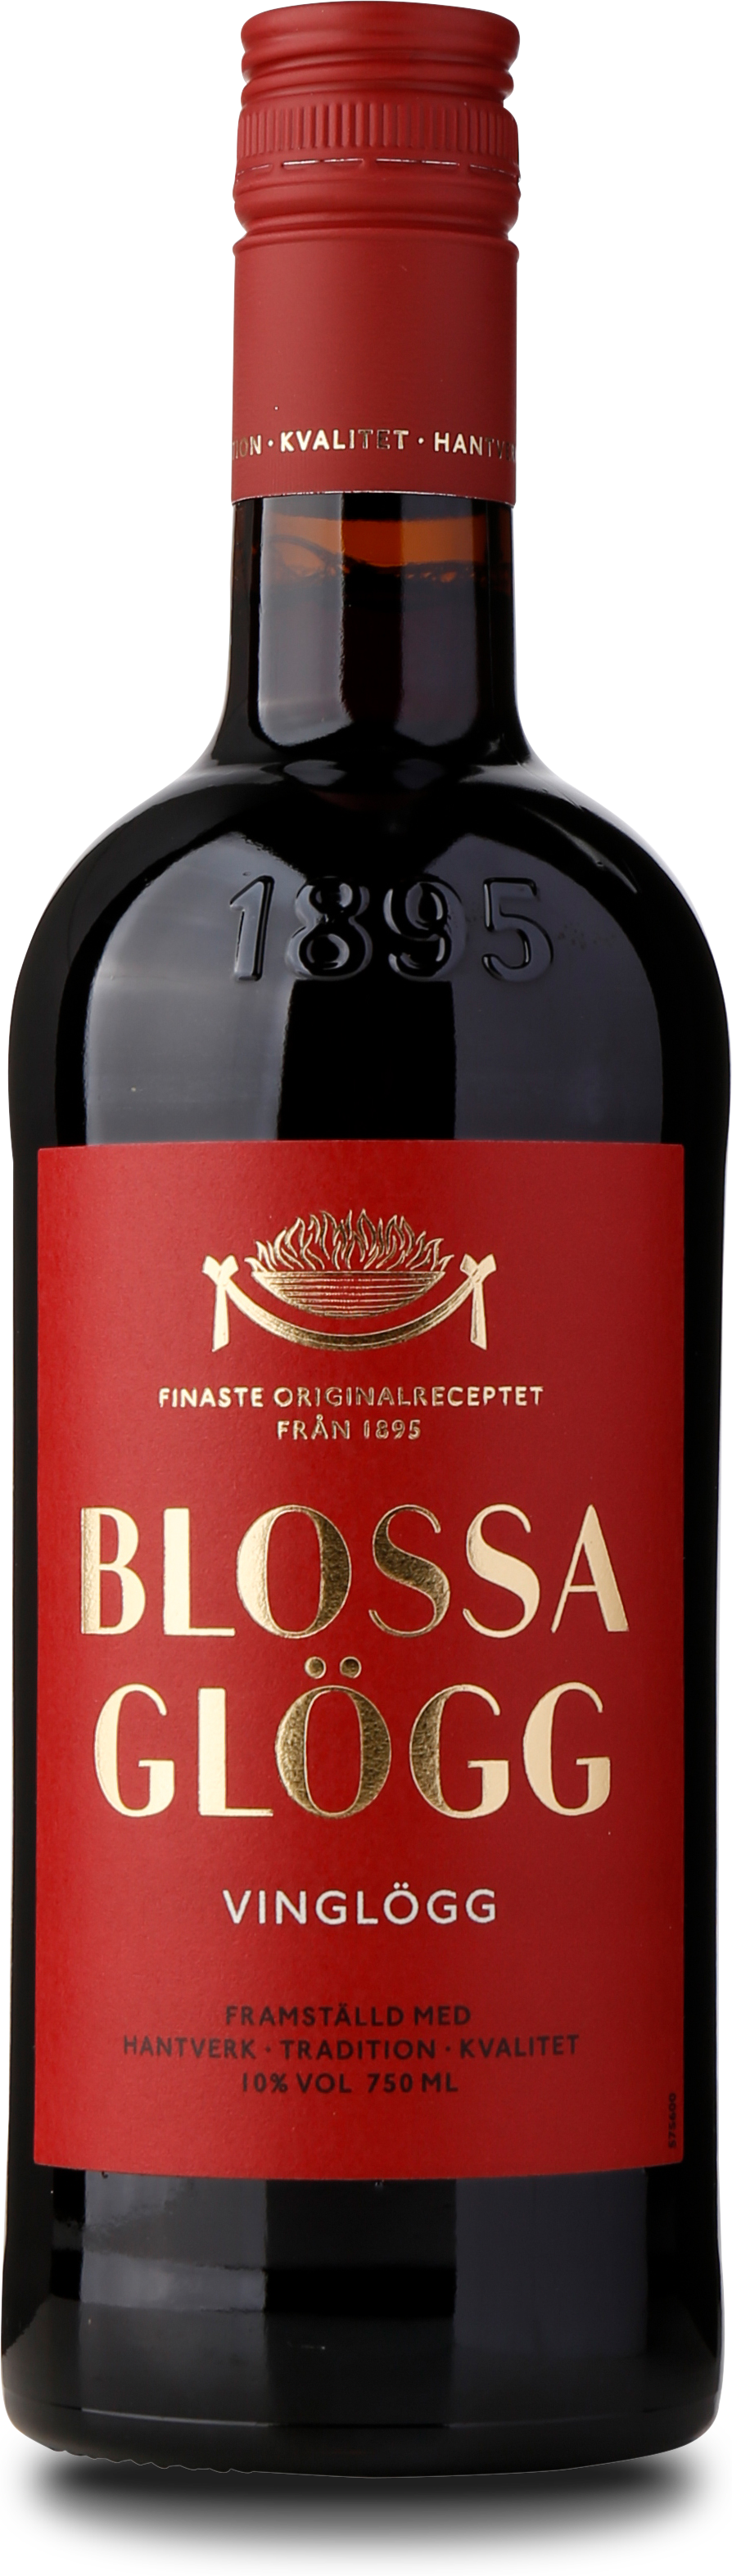 Blossa Vin Glögg 10%, 75 cl